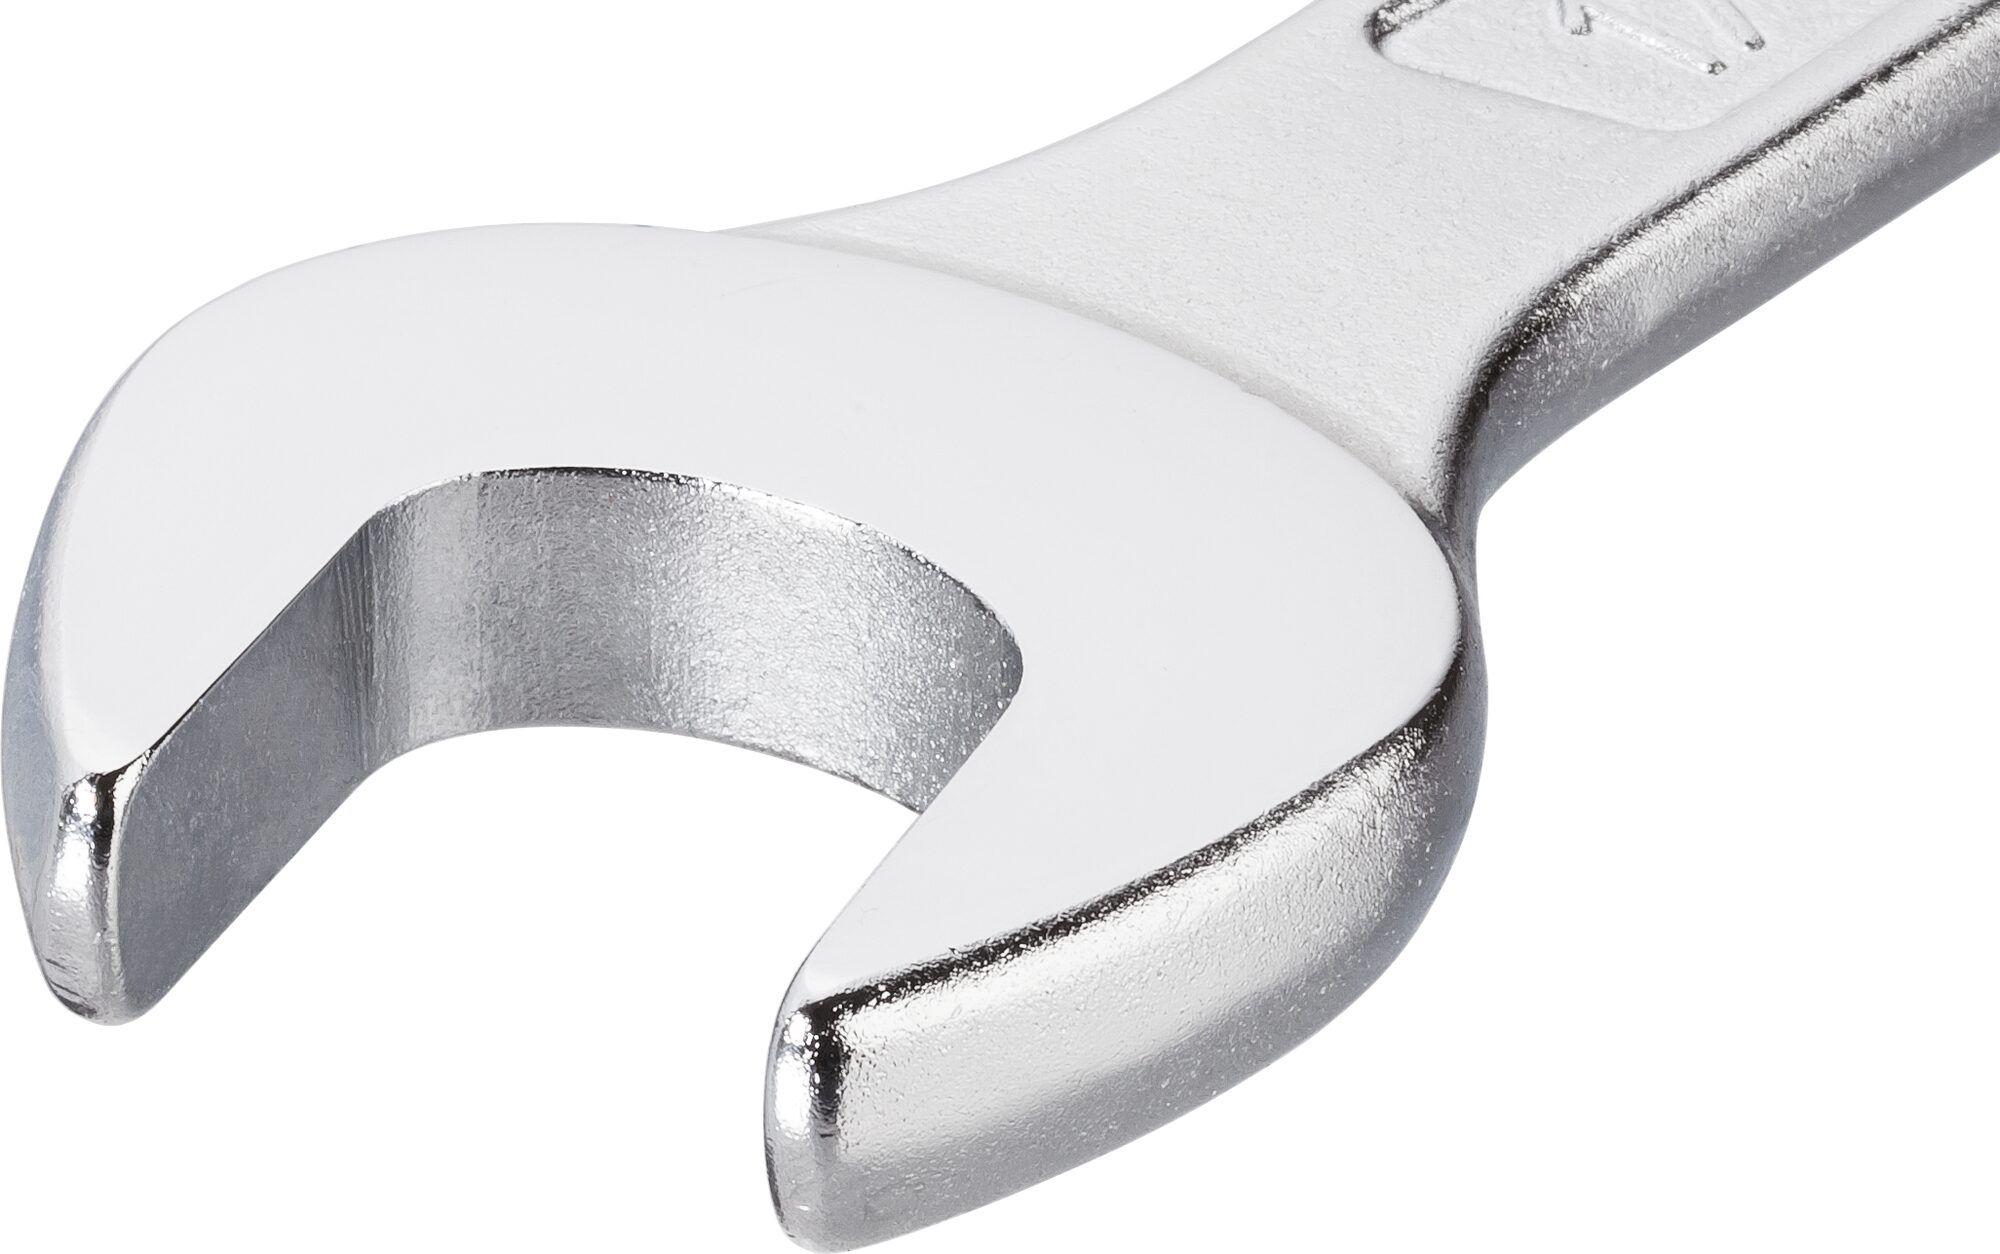 HAZET Ring-Maulschlüssel 600N-30 · Außen Doppel-Sechskant-Tractionsprofil · 30 mm